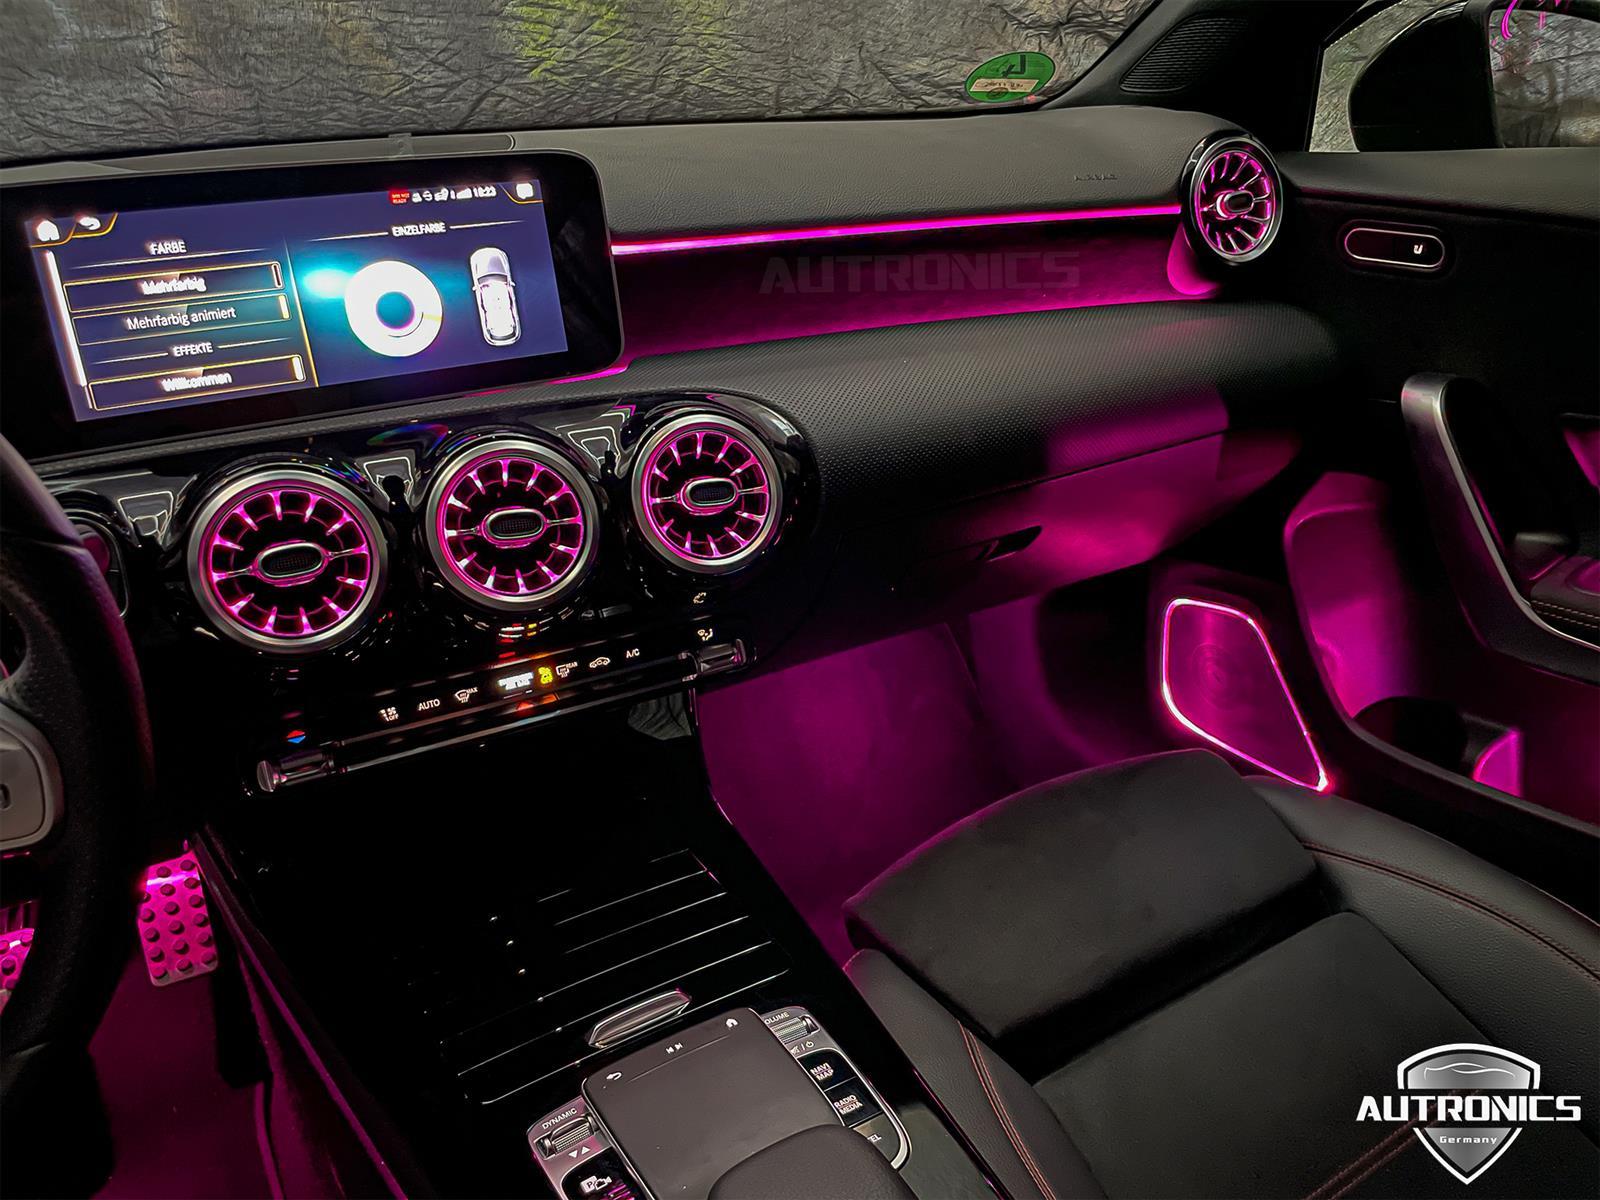 Ambientebeleuchtung Nachrüsten im Auto Beleuchtung Ambiente geeignet für Mercedes Benz A Klasse W177 - 02